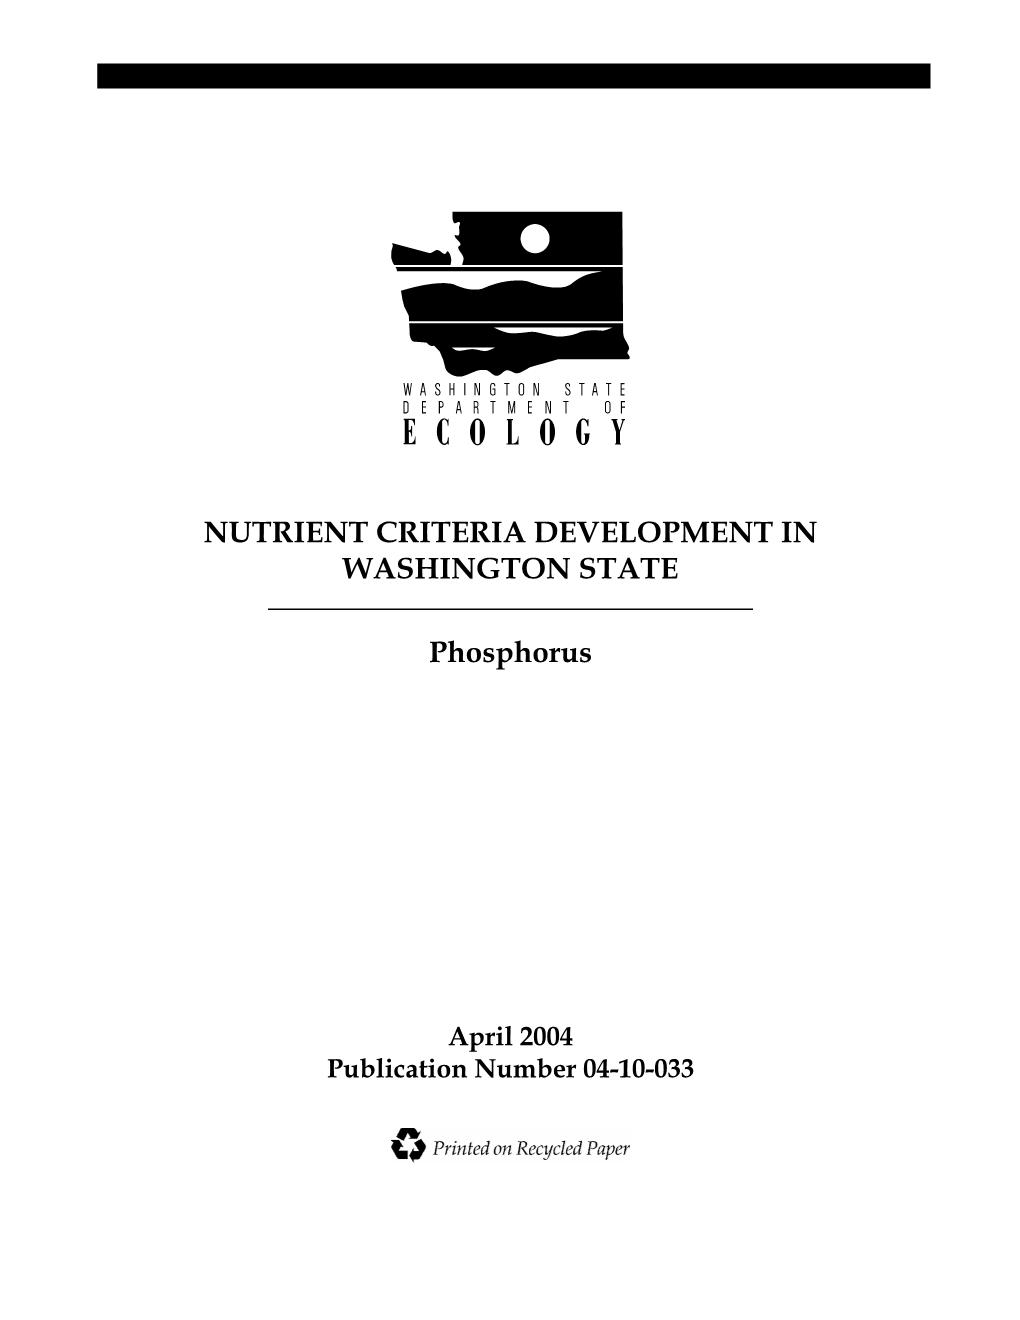 Nutrient Criteria Development in Washington State